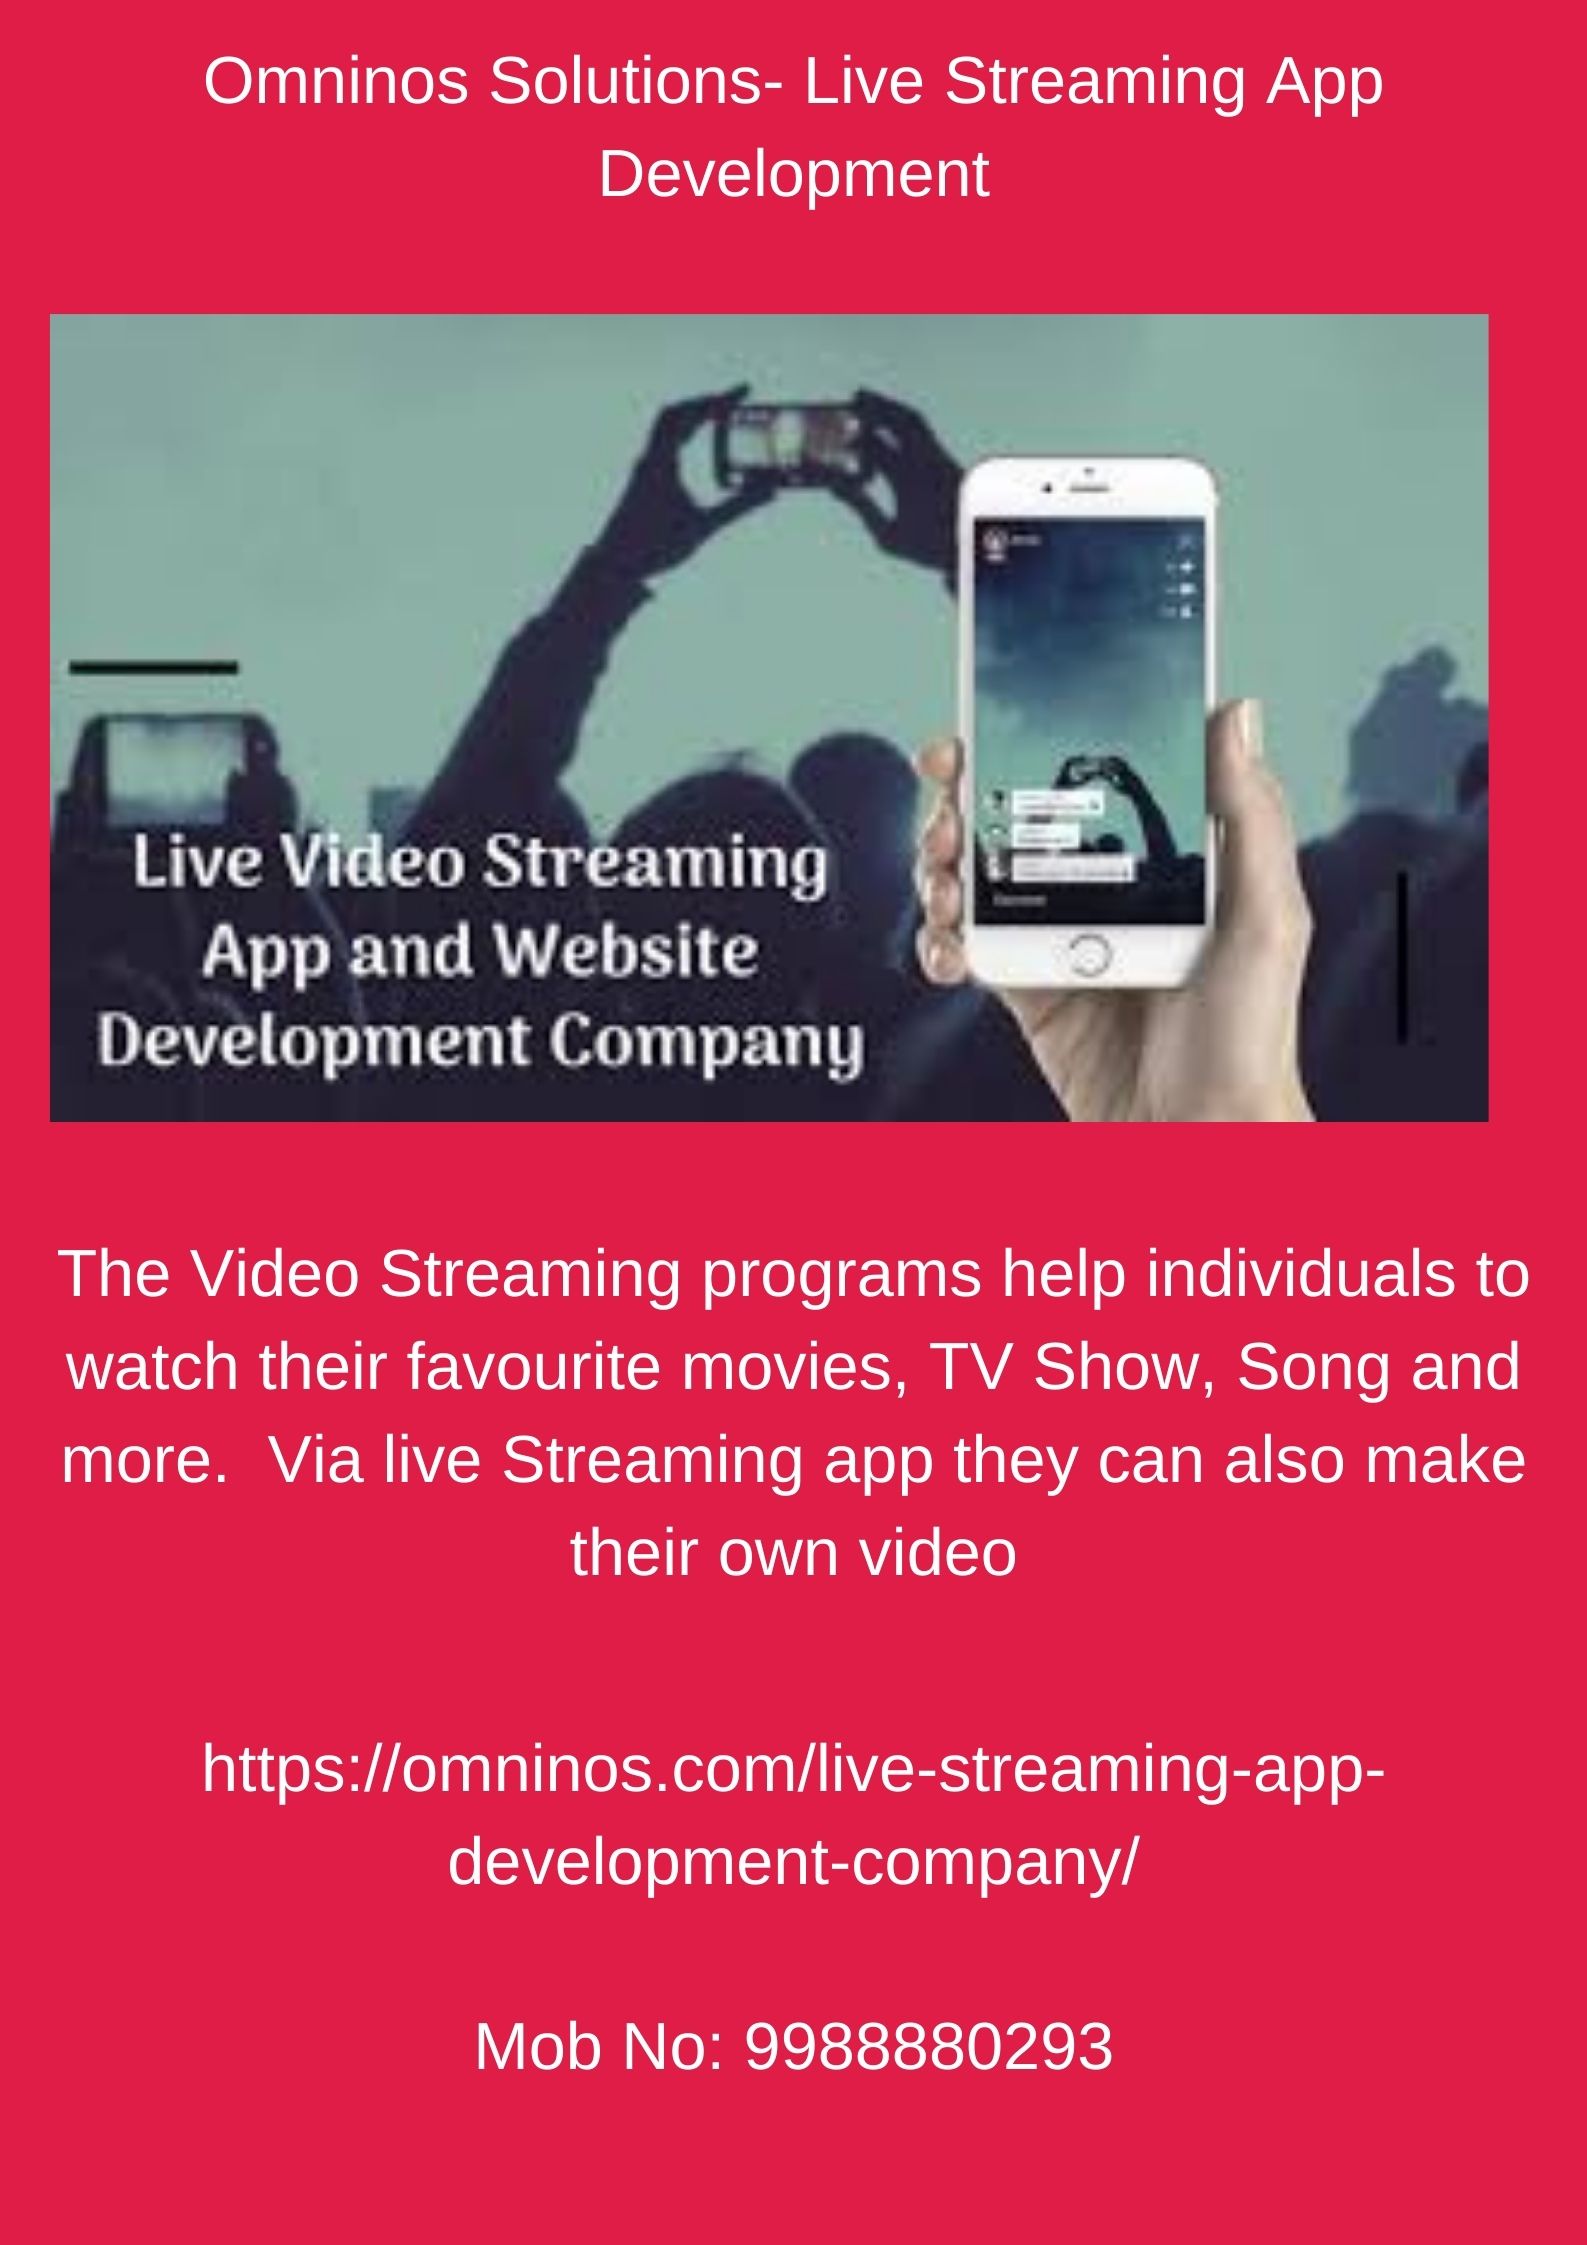 Omninos Solutions- Live Streaming App Development.jpg  by amritkaur